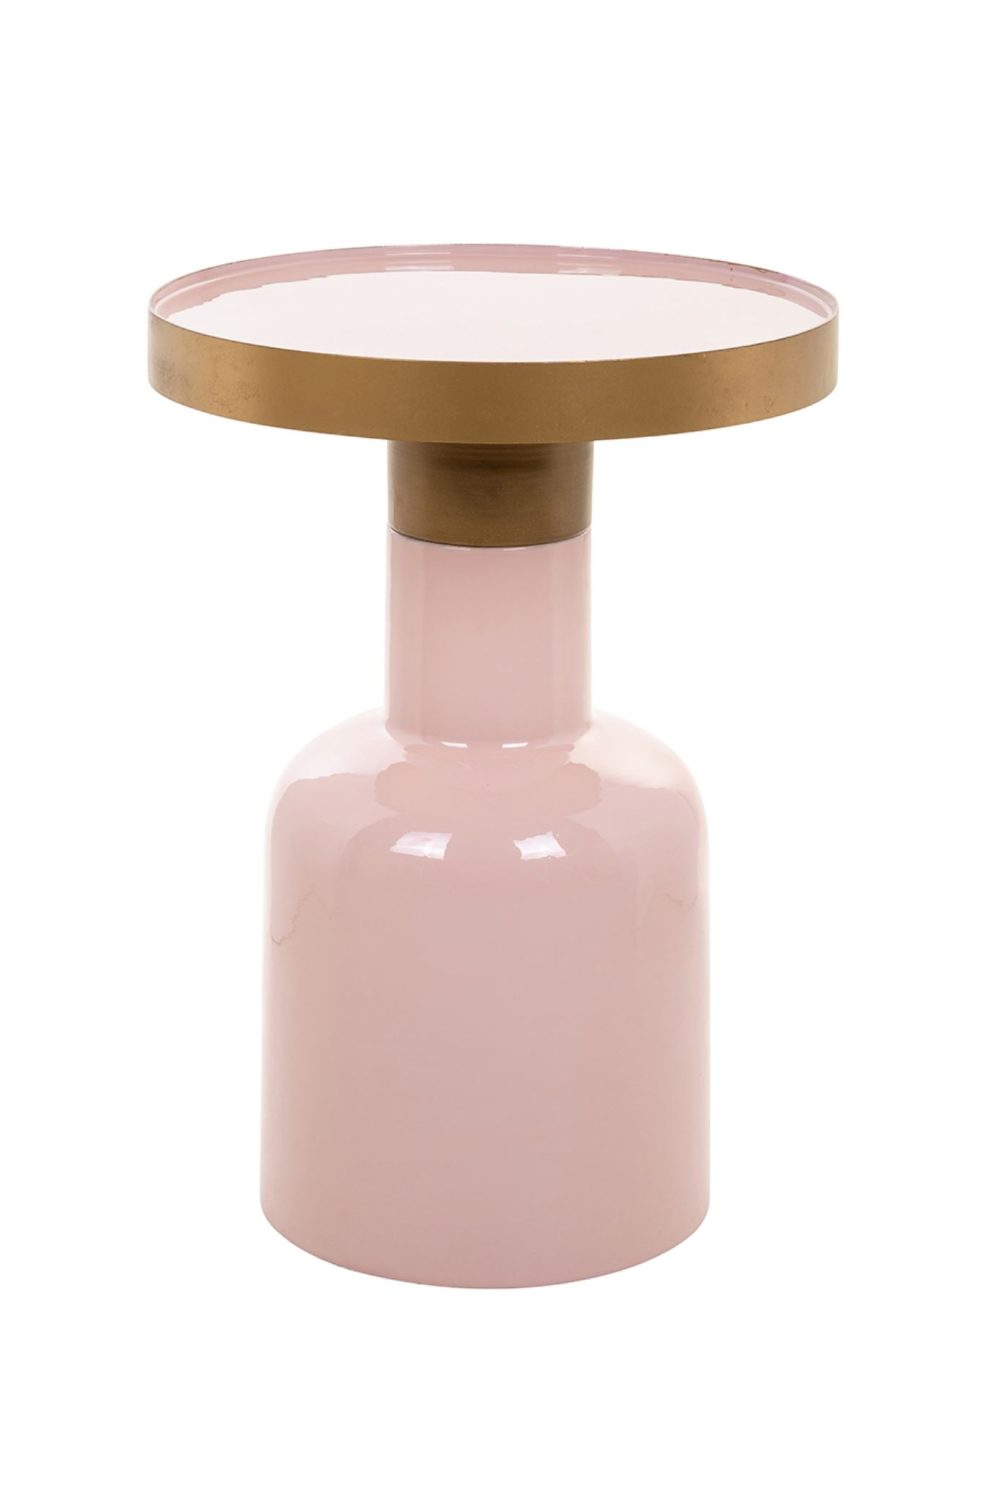 Modern Pink End Table OROA Candy OROA - OROA